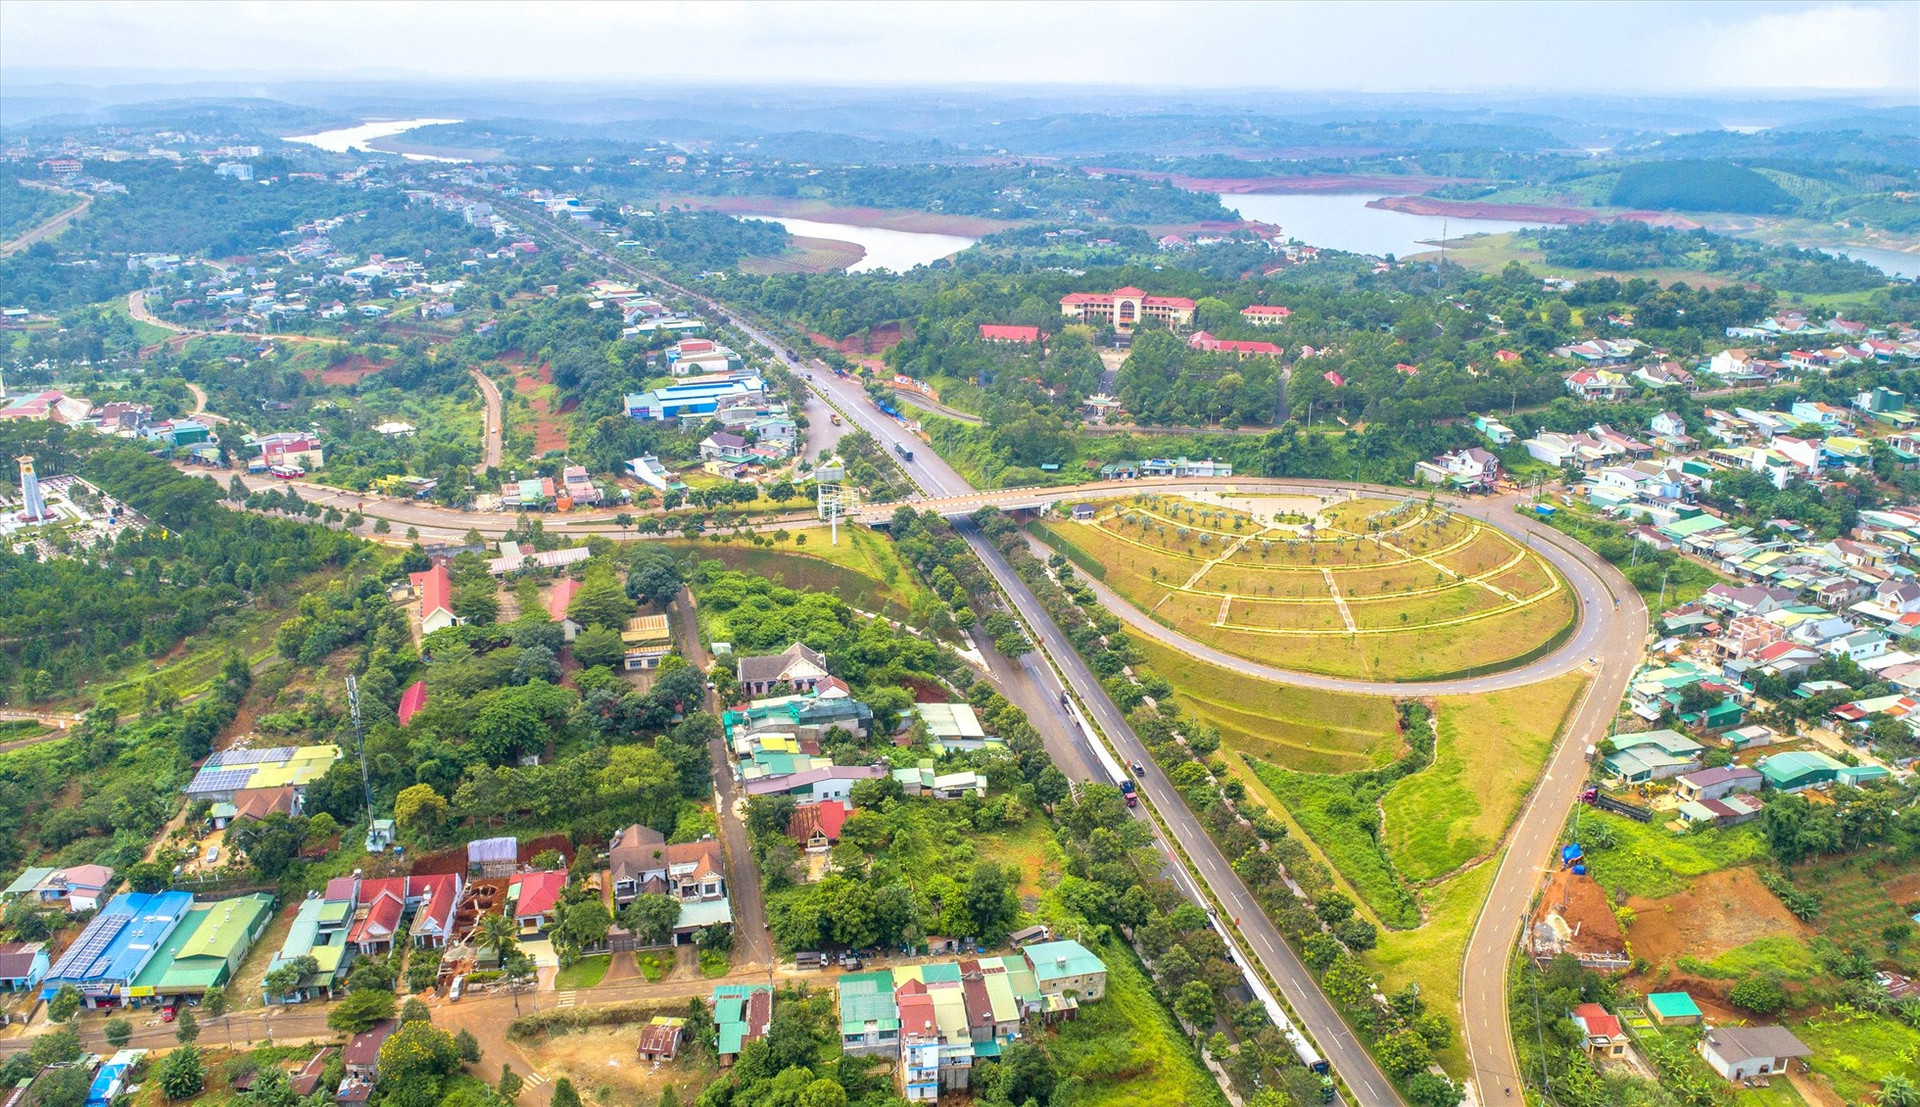 Hiện có gần 1/3 diện tích tự nhiên ở tỉnh Đắk Nông bao gồm đường giao thông Quốc lộ, trường học, cơ quan Nhà nước... dính quy hoạch khai khoáng bô xít. Ảnh: Phan Tuấn